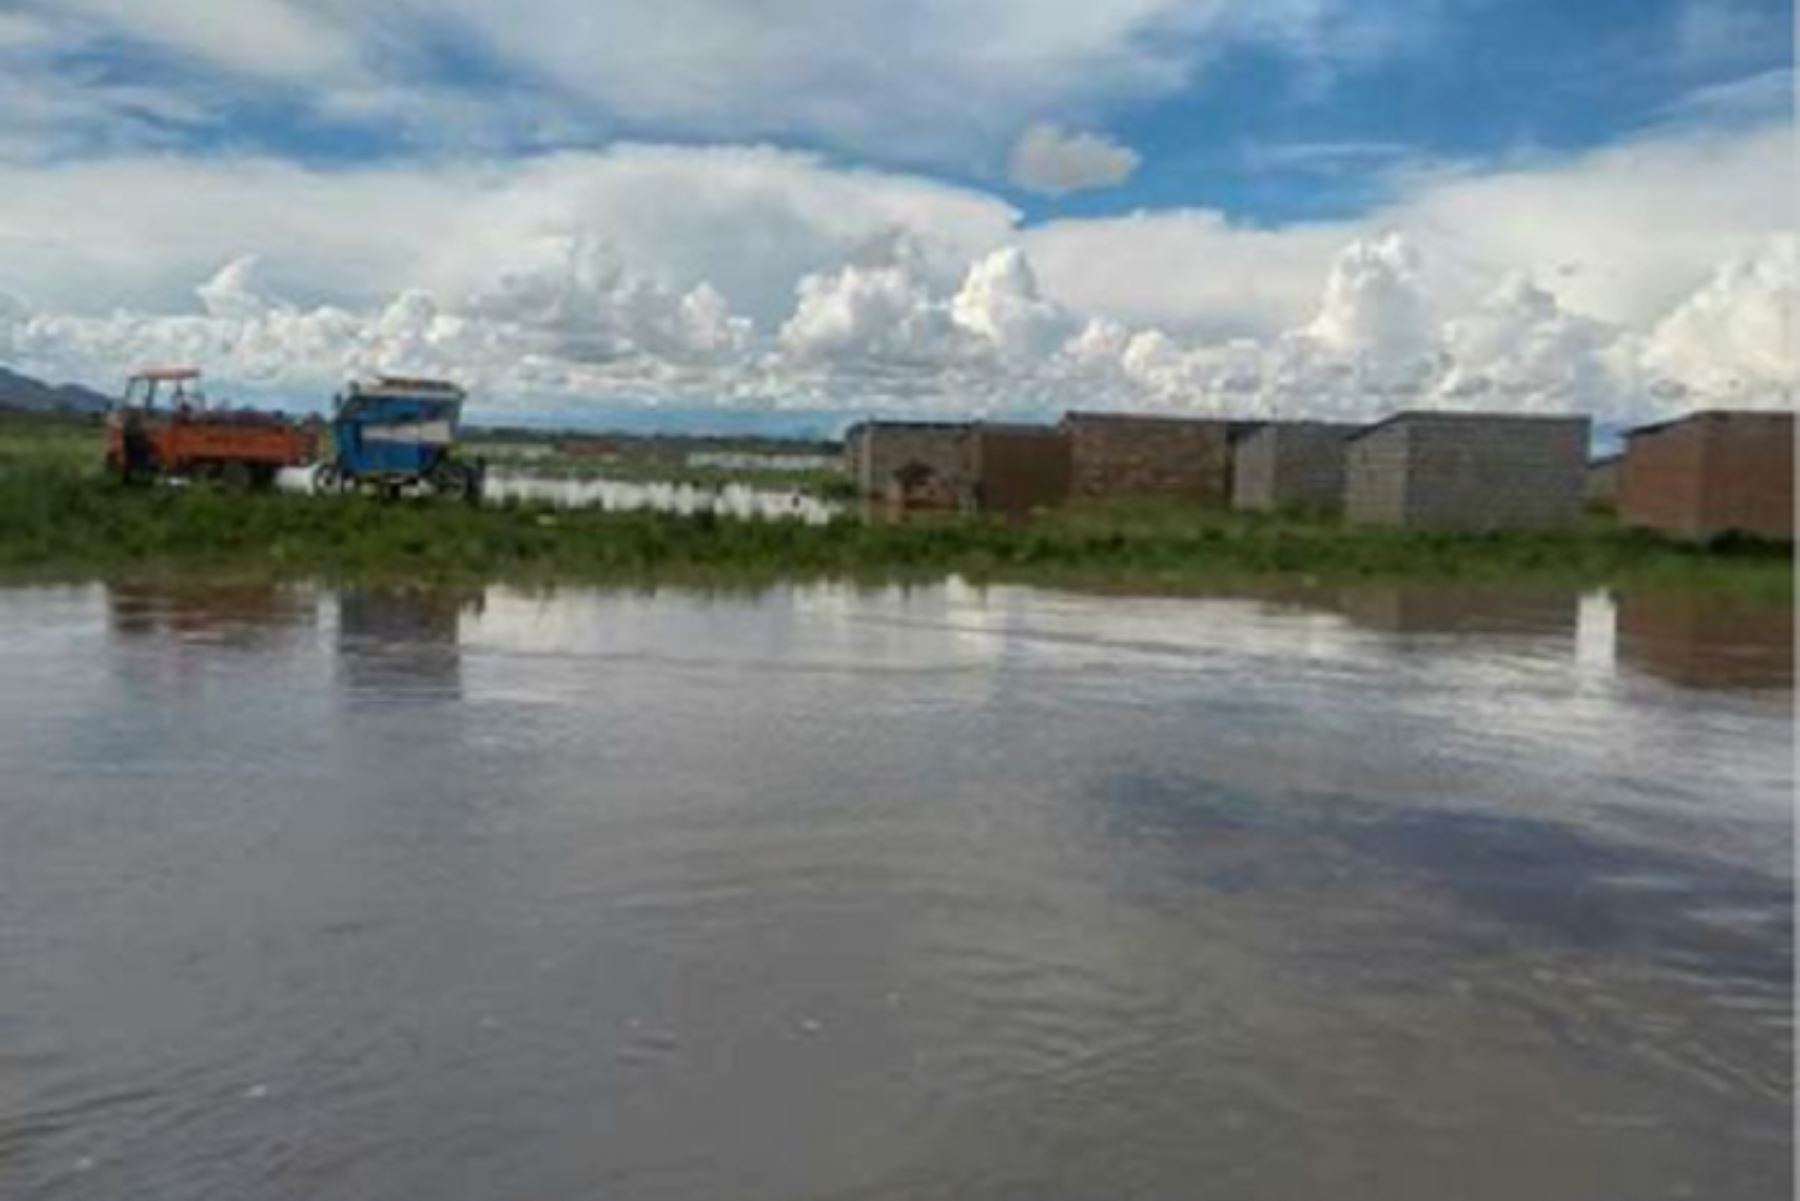 El caudal del río Cabanillas, ubicado en la región Puno, se incrementó debido a las persistentes lluvias en las cuencas del altiplano y se encuentra próximo a ingresar al estado de alerta hidrológica naranja, informó el Senamhi al Centro de Operaciones de Emergencia Nacional (COEN). ANDINA/Difusión